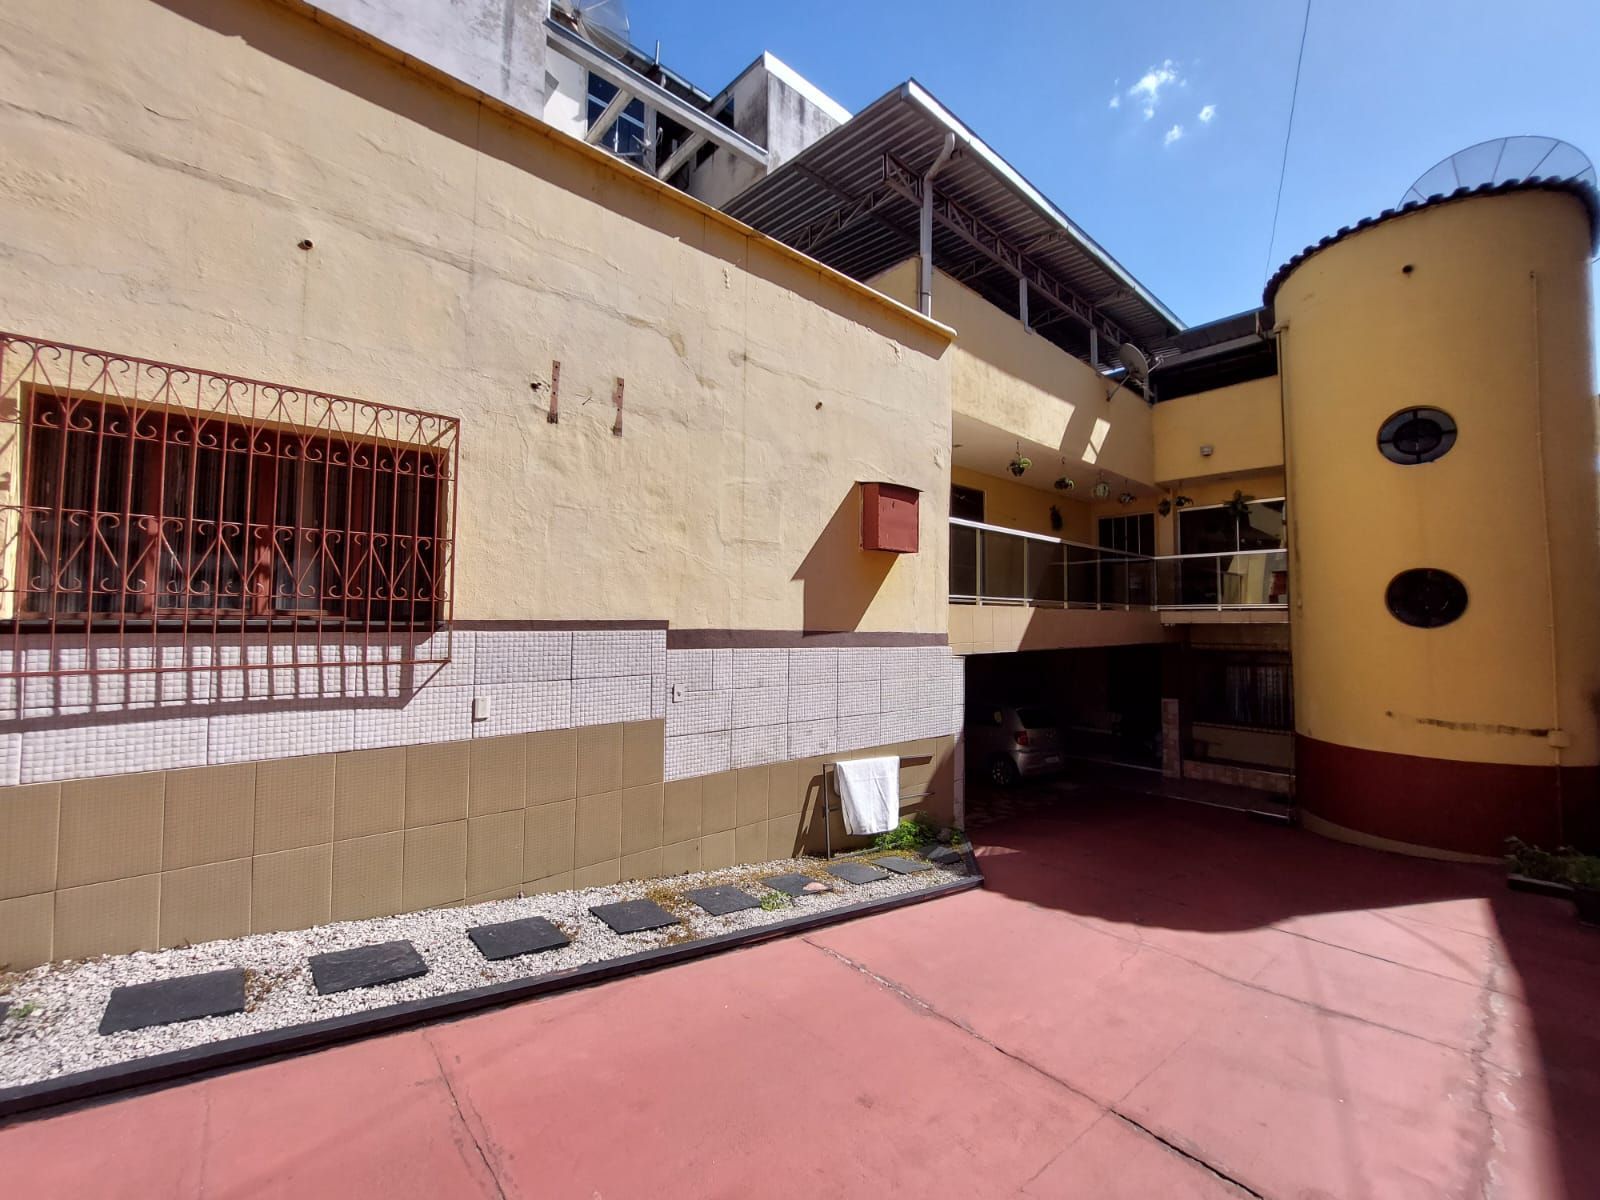 Prdio comercial/residencial  venda  no Centro - Ipatinga, MG. Imveis